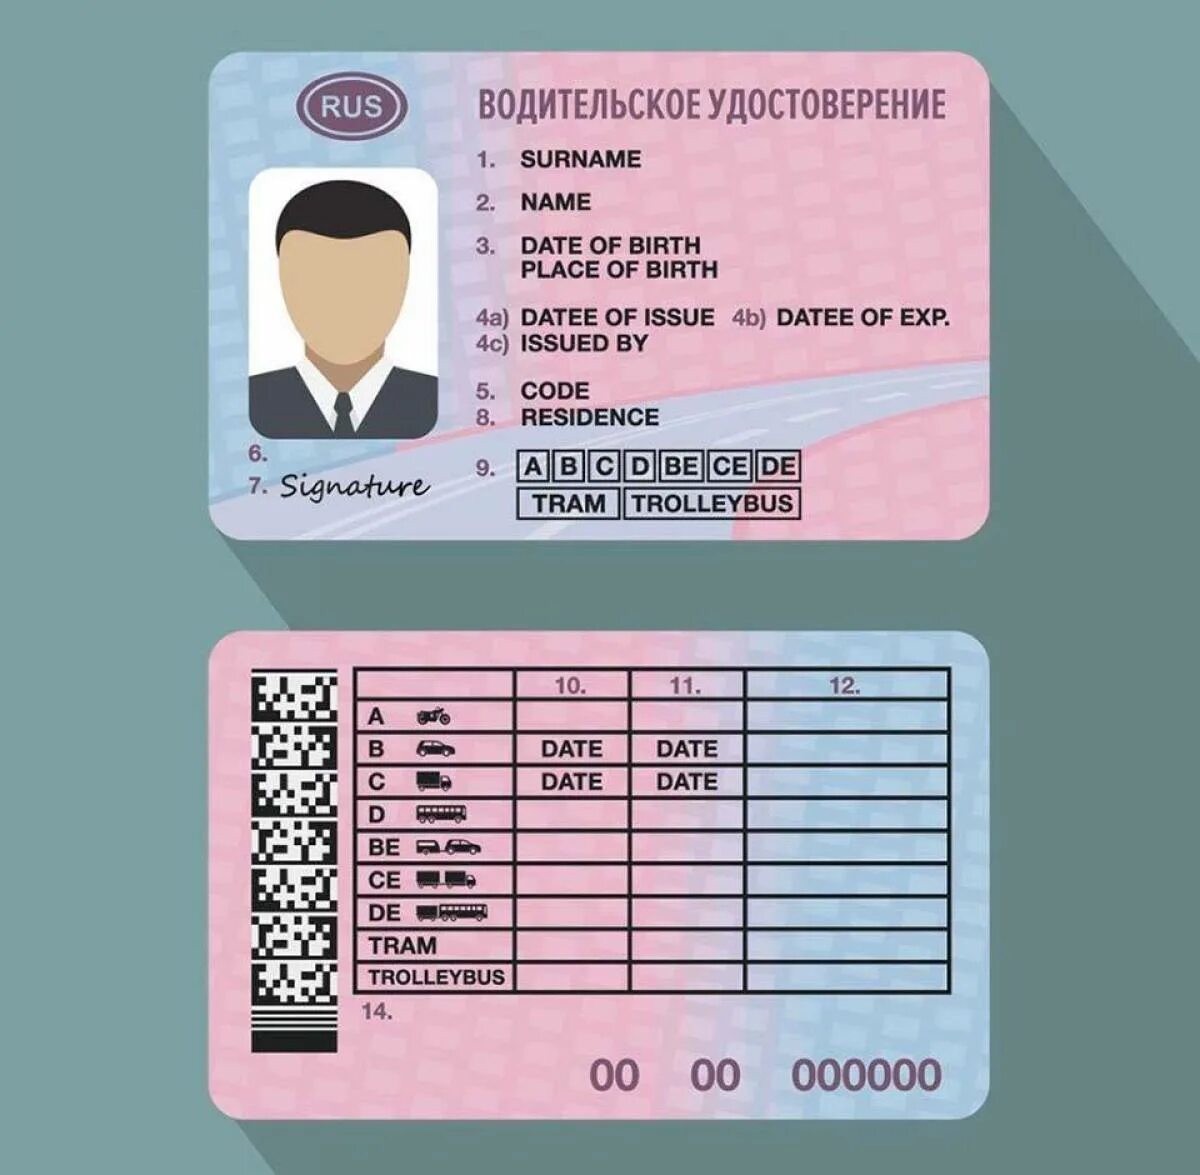 Бланки водительского удостоверения. Новые правила получения прав с 1 апреля